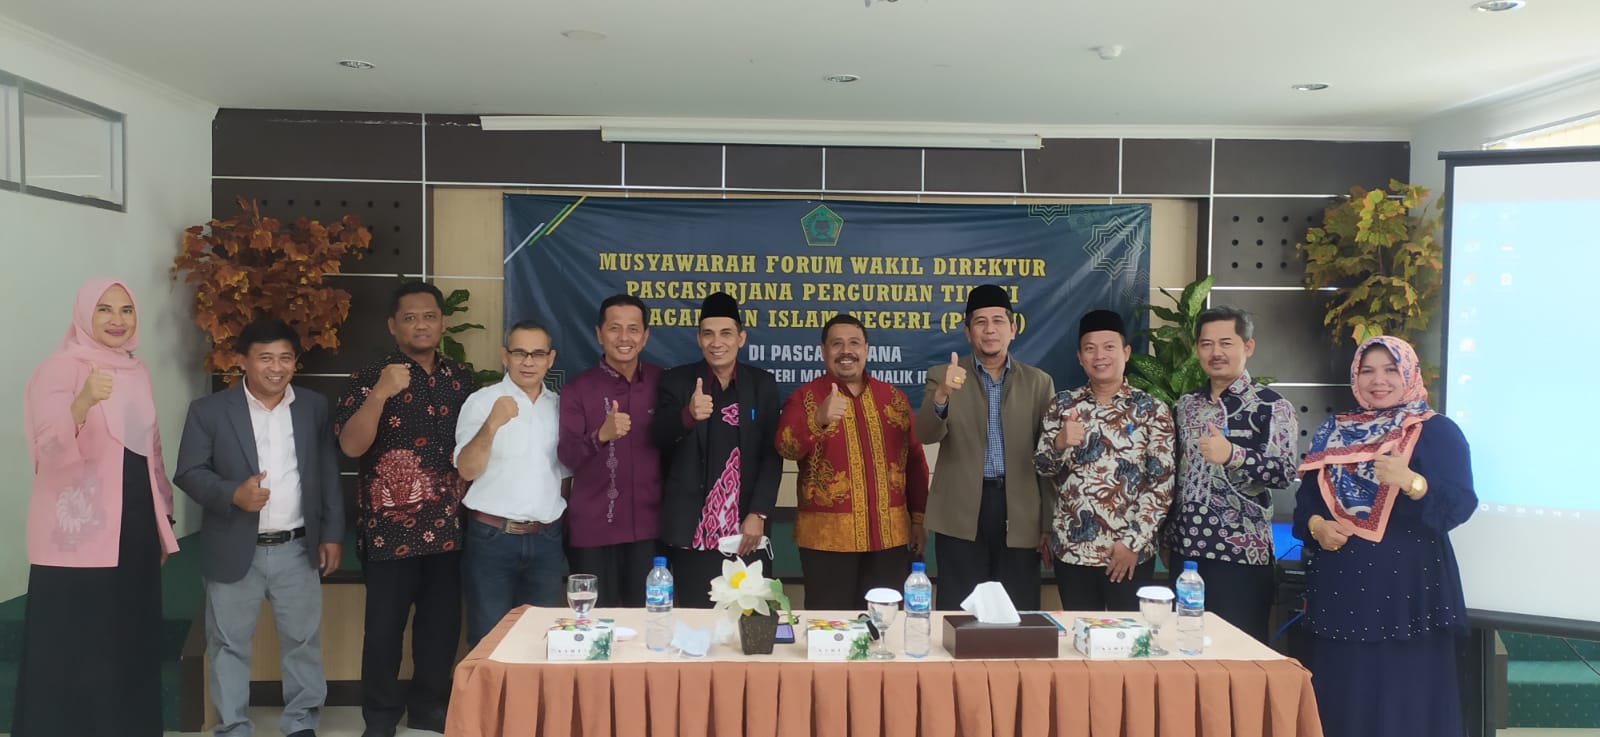 UIN Malang Tuan Rumah Pertama Forum Wakil Direktur Pascasarjana Perguruan Tinggi Keagamaan Islam Negeri (PTKIN) Se-Indonesia